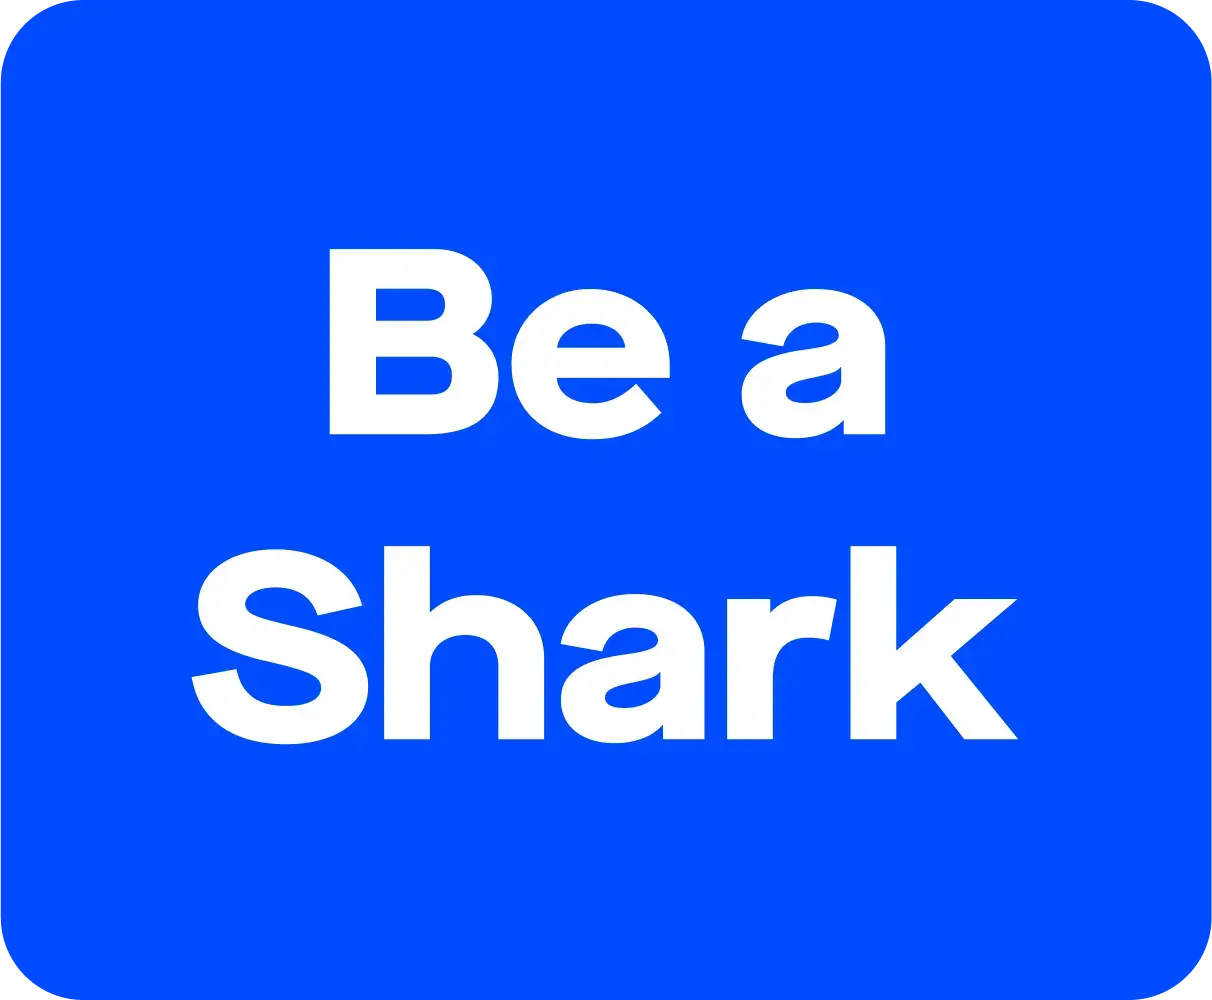 Be a shark - 3